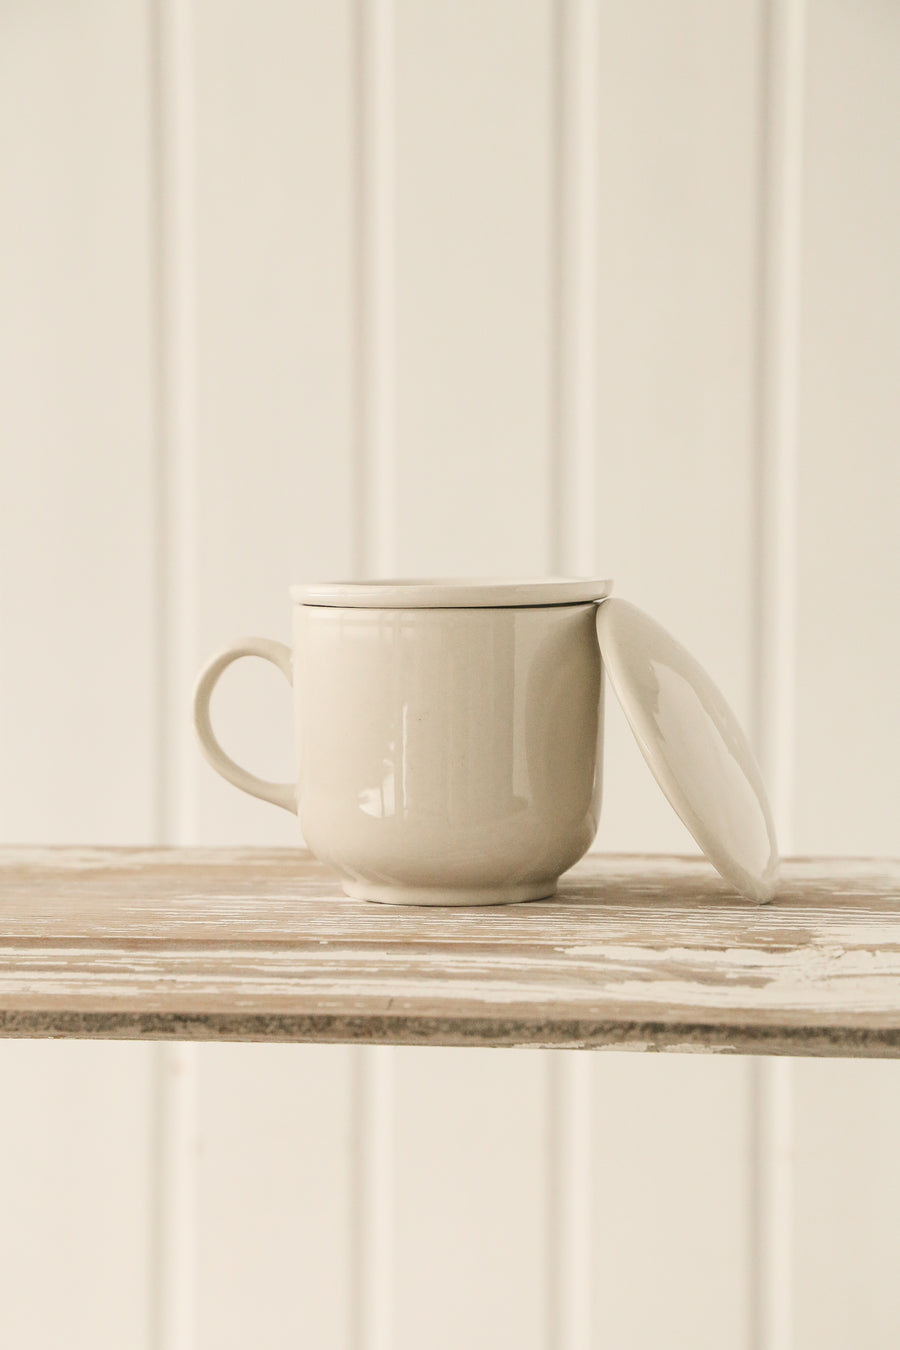 Vintage Tea Mug Set